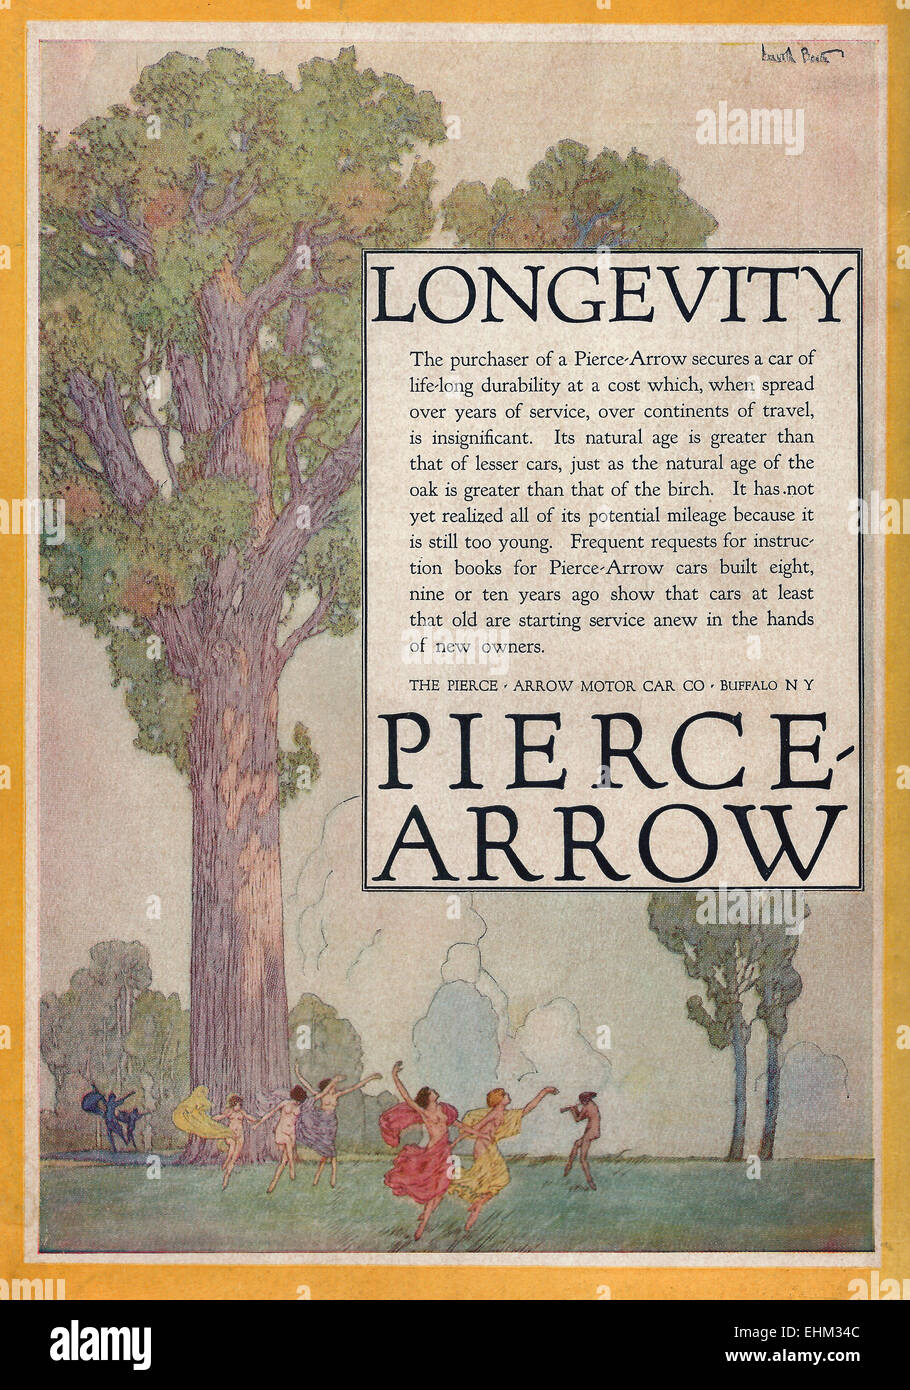 Pierce Arrow Publicité - Longévité - 1916 Banque D'Images